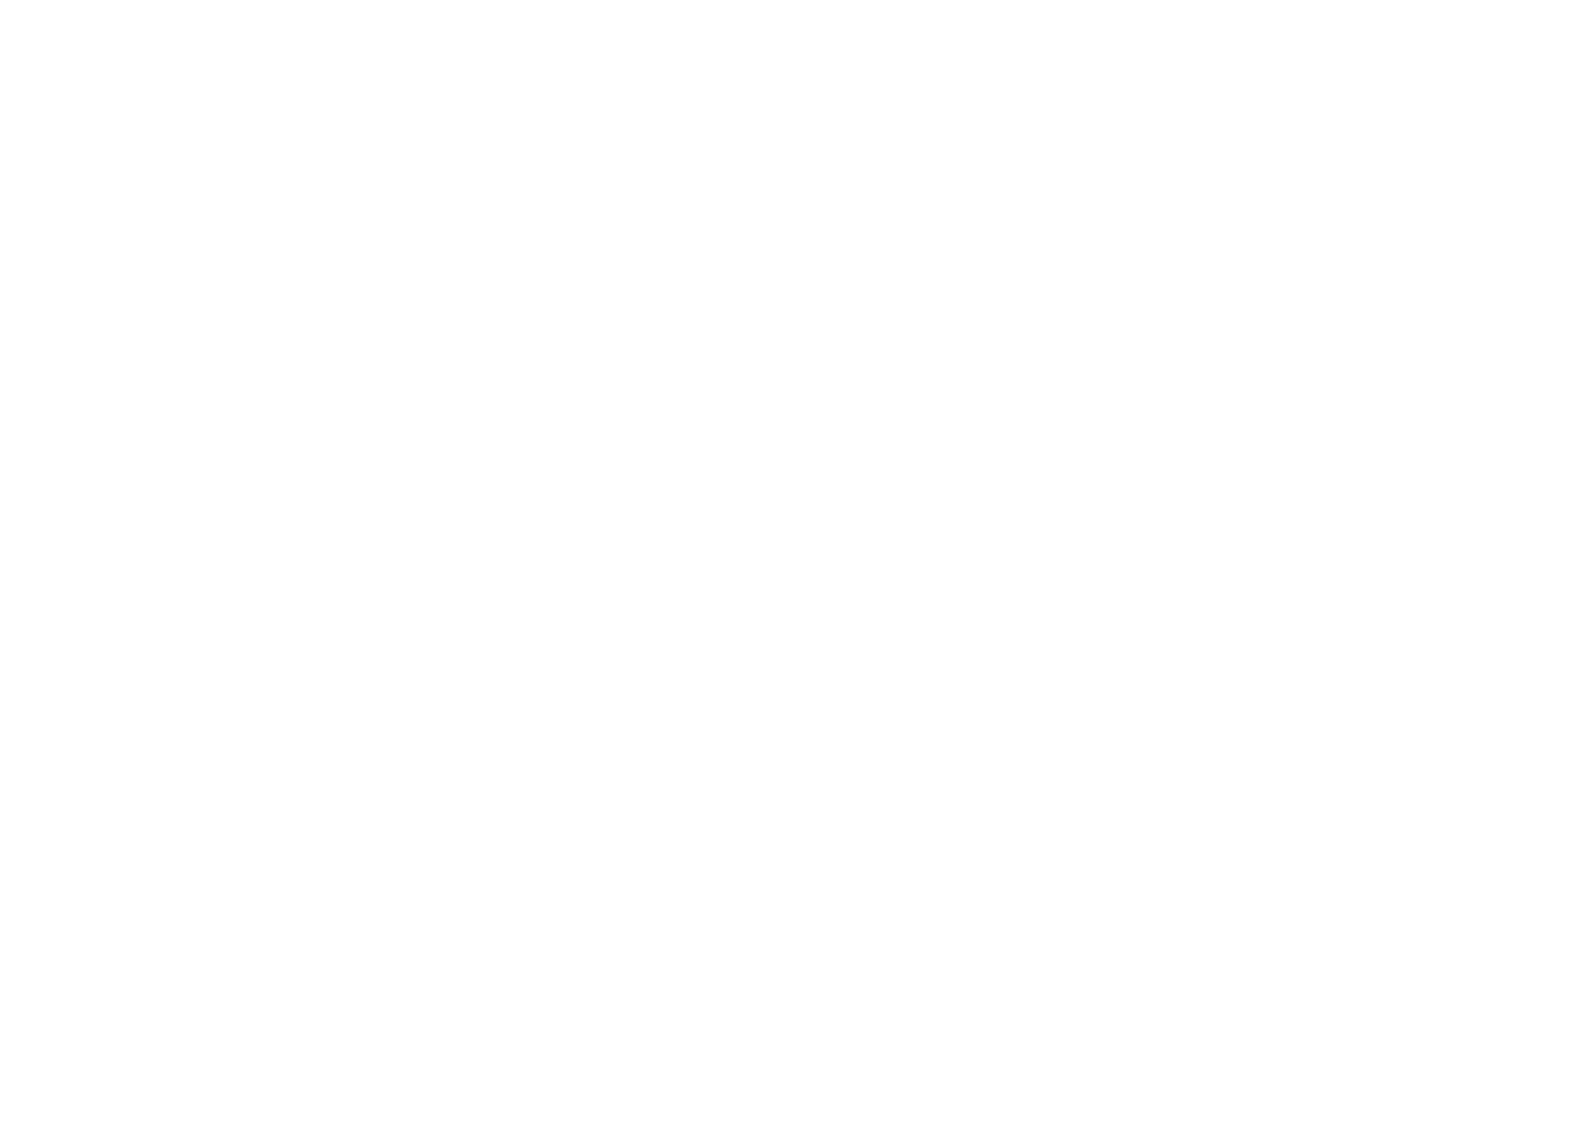 Blind Date logo